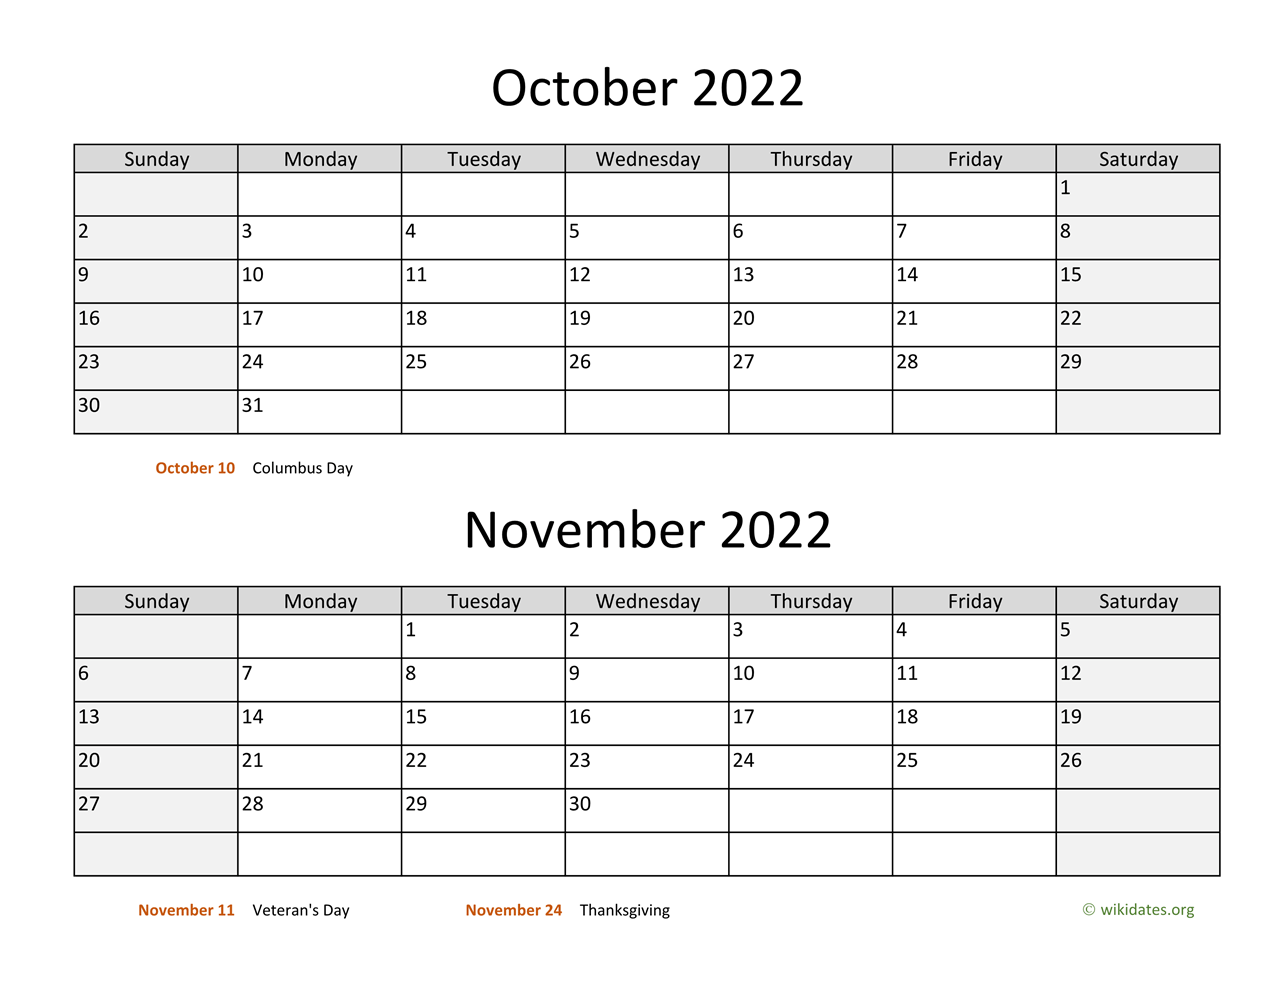 October And November 2022 Calendar October And November 2022 Calendar | Wikidates.org